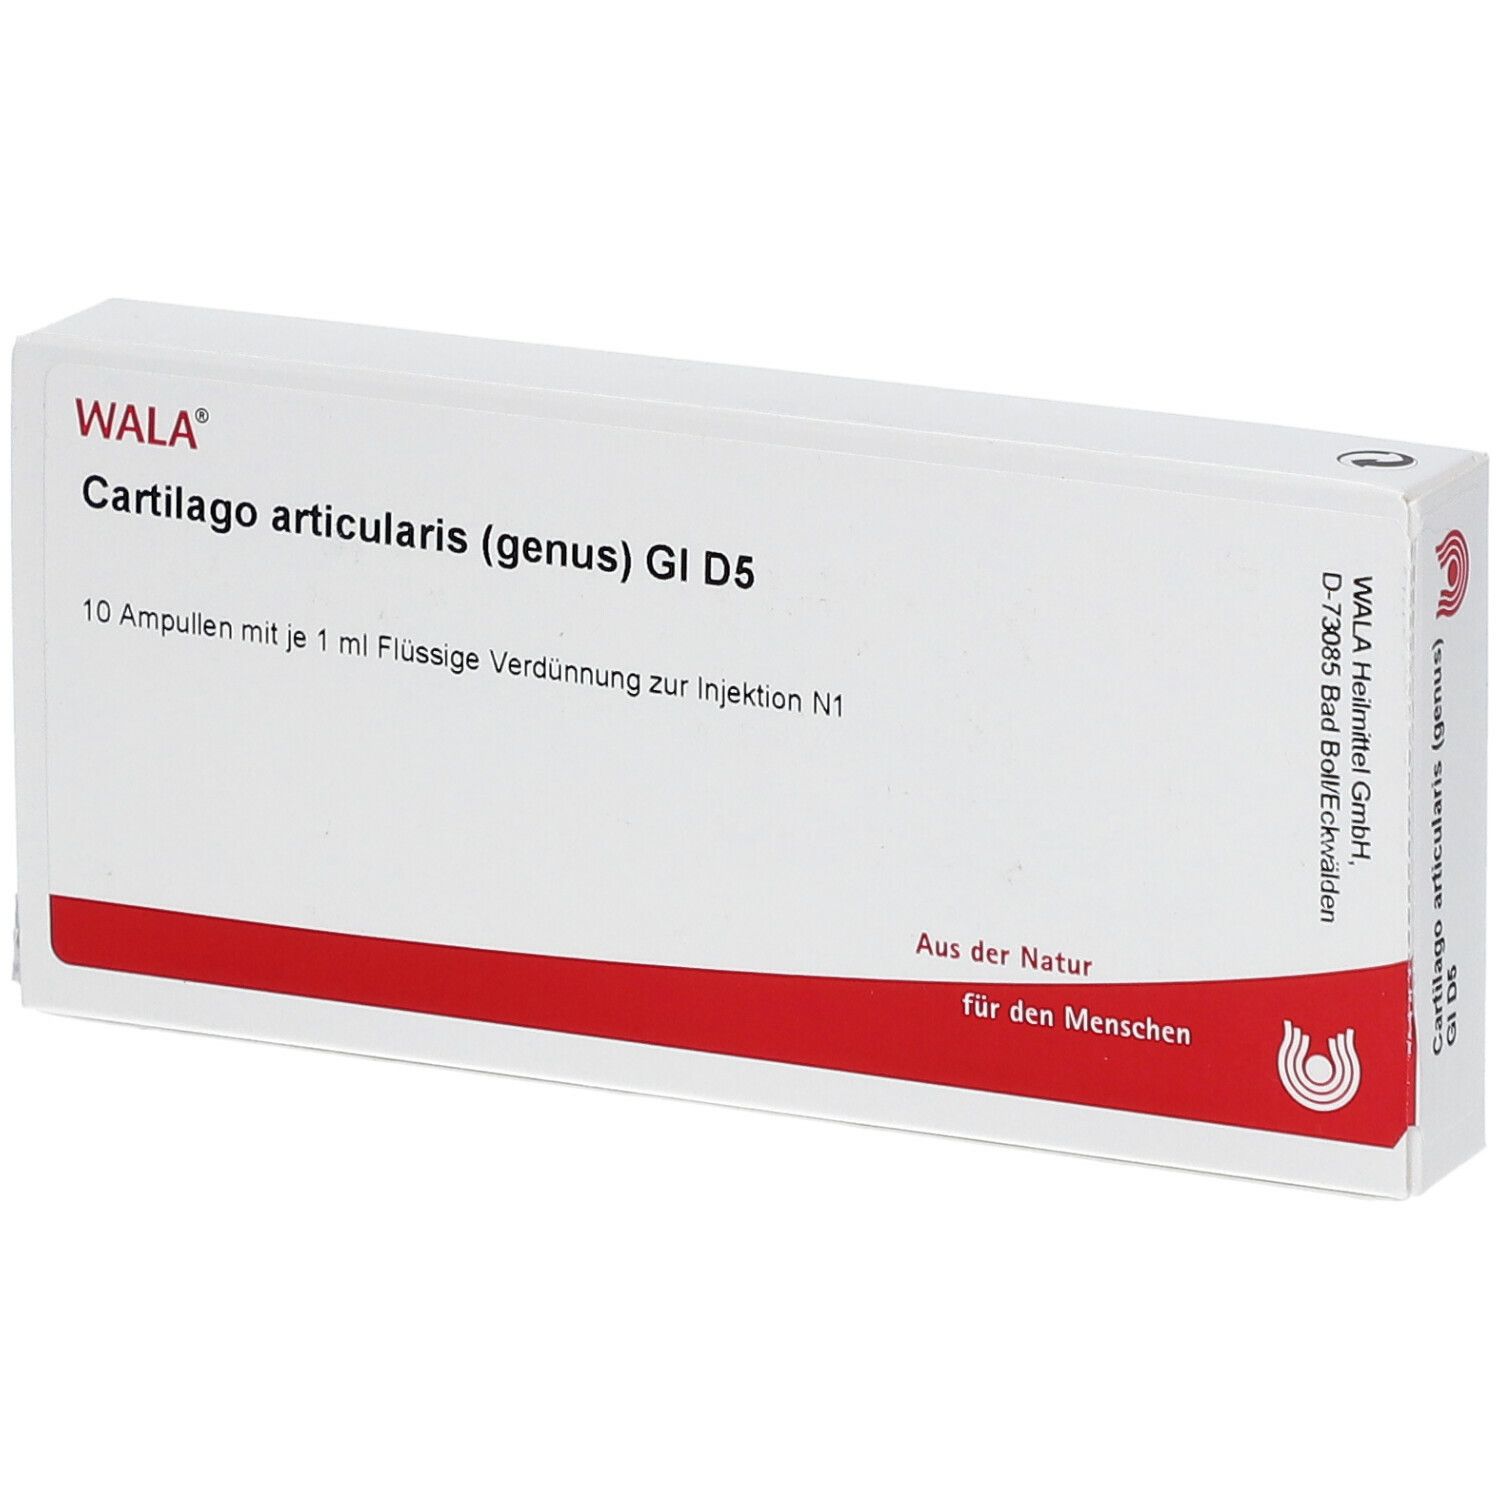 WALA® Cartilago articularis genus Gl D 5